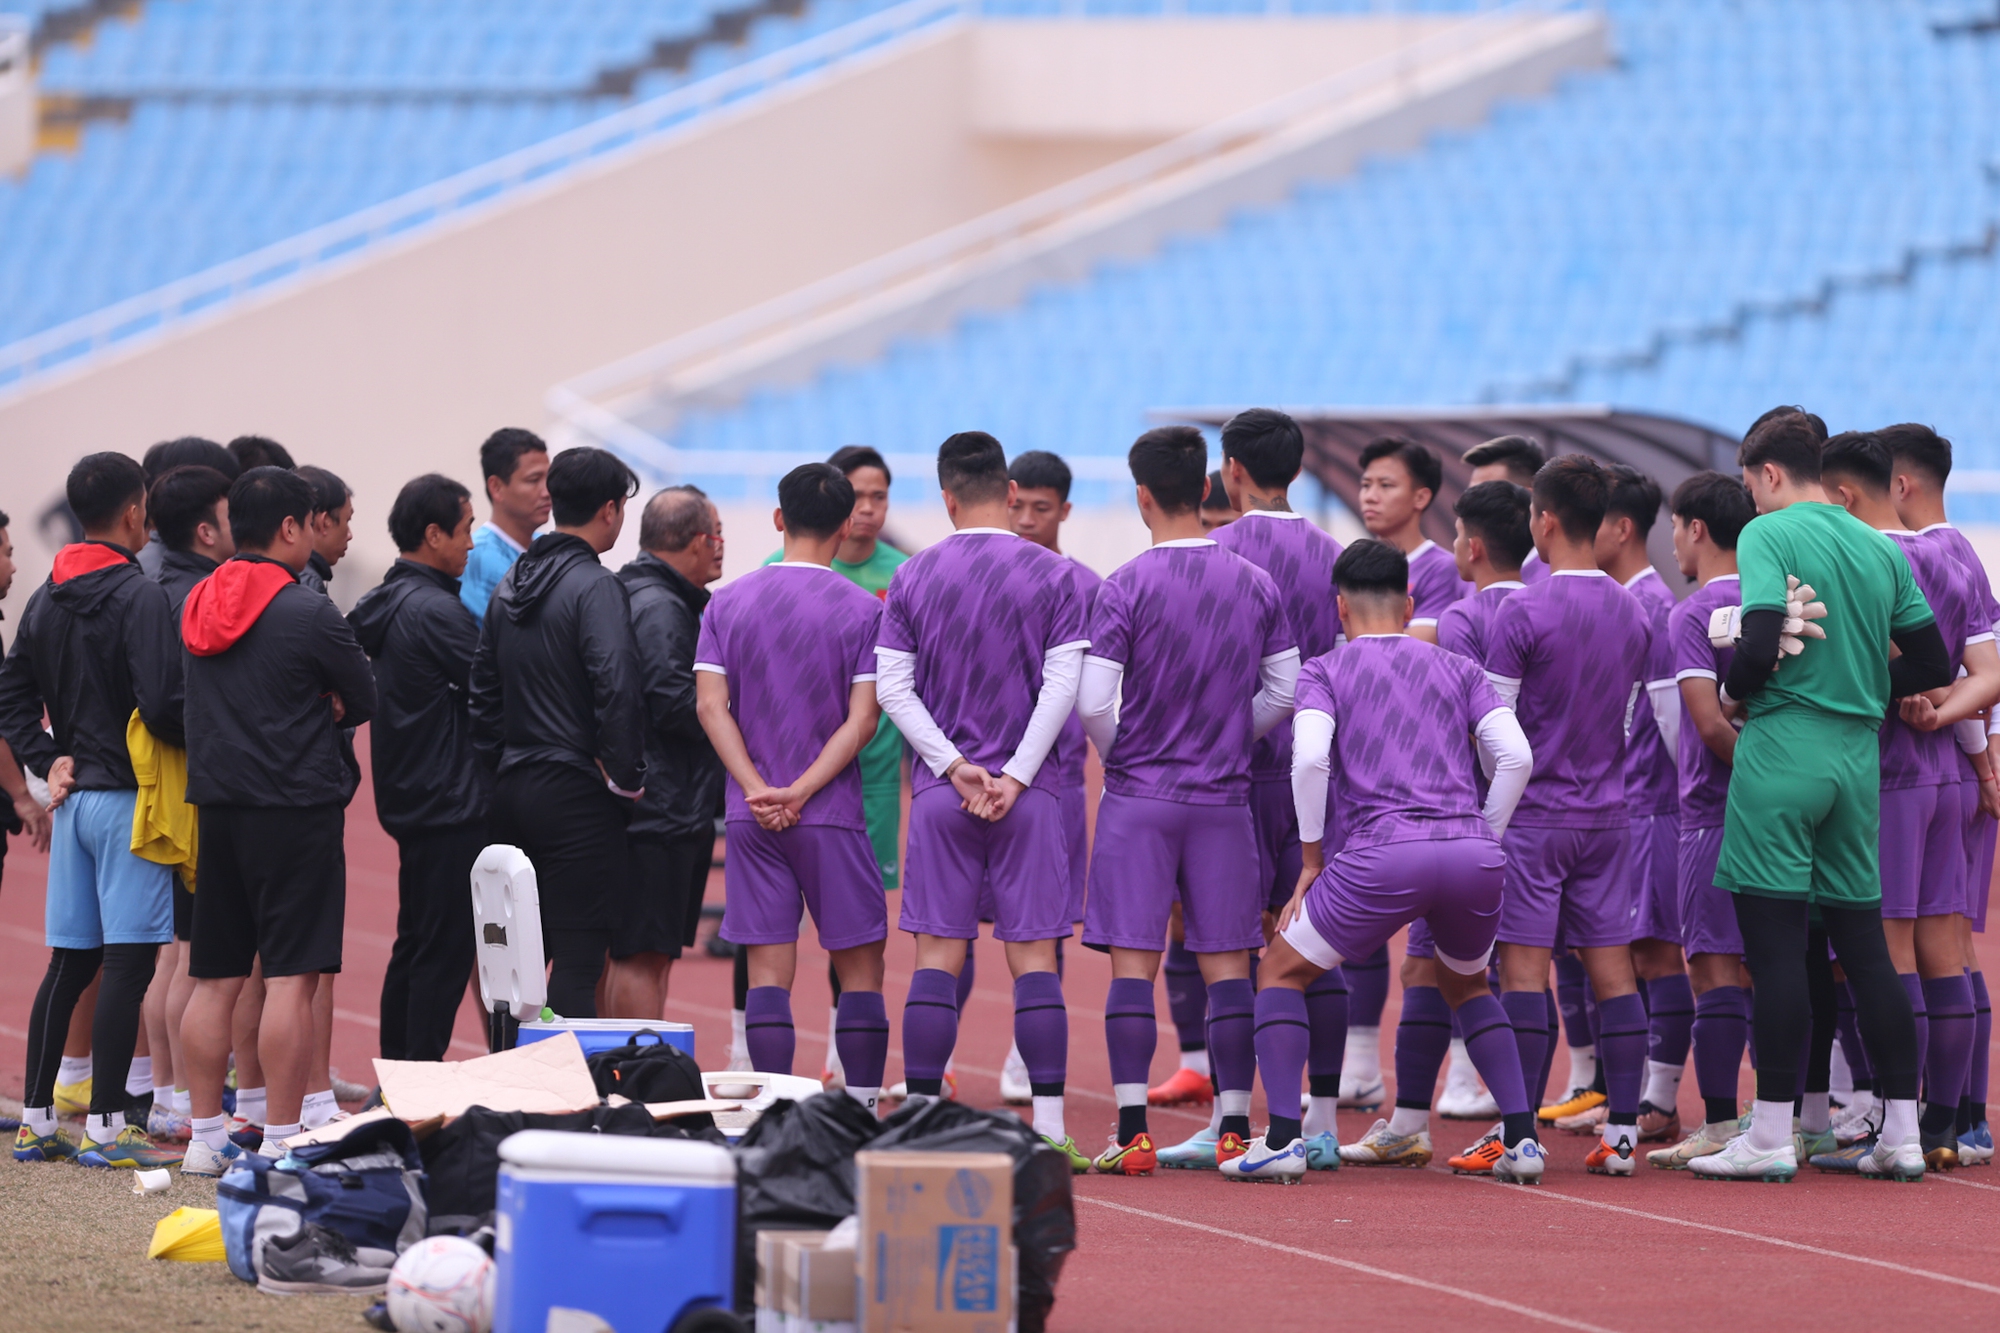 HLV Park Hang-seo kiểm tra sân, đội tuyển Việt Nam đến sớm phải khởi động ngoài đường chạy - Ảnh 9.